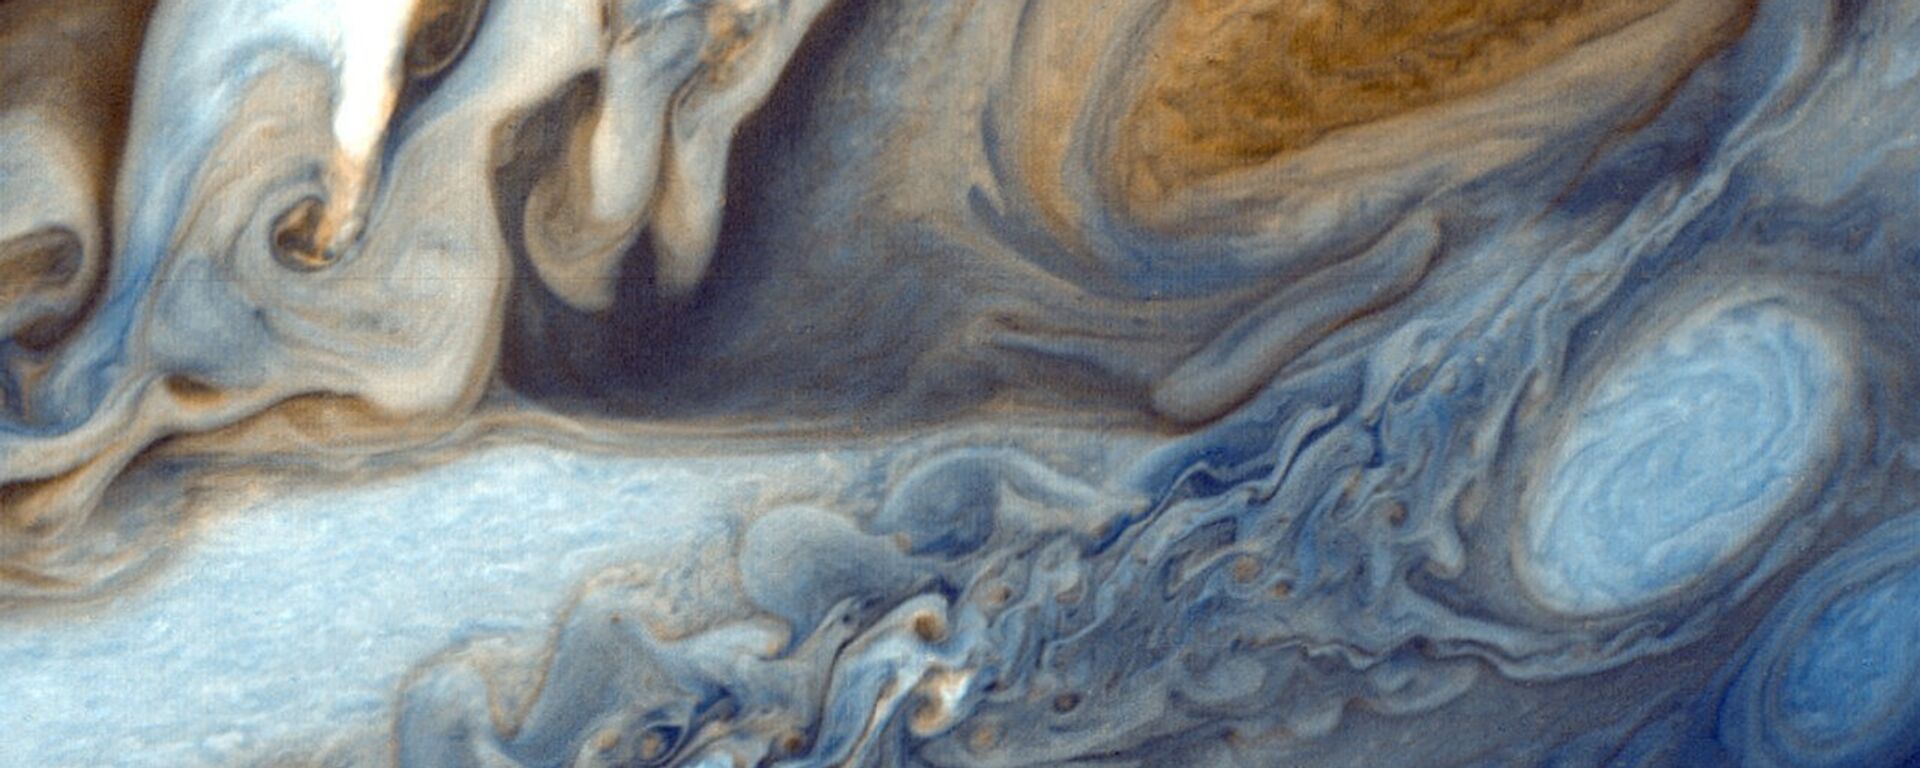 Júpiter, imagen referencial - Sputnik Mundo, 1920, 19.03.2021